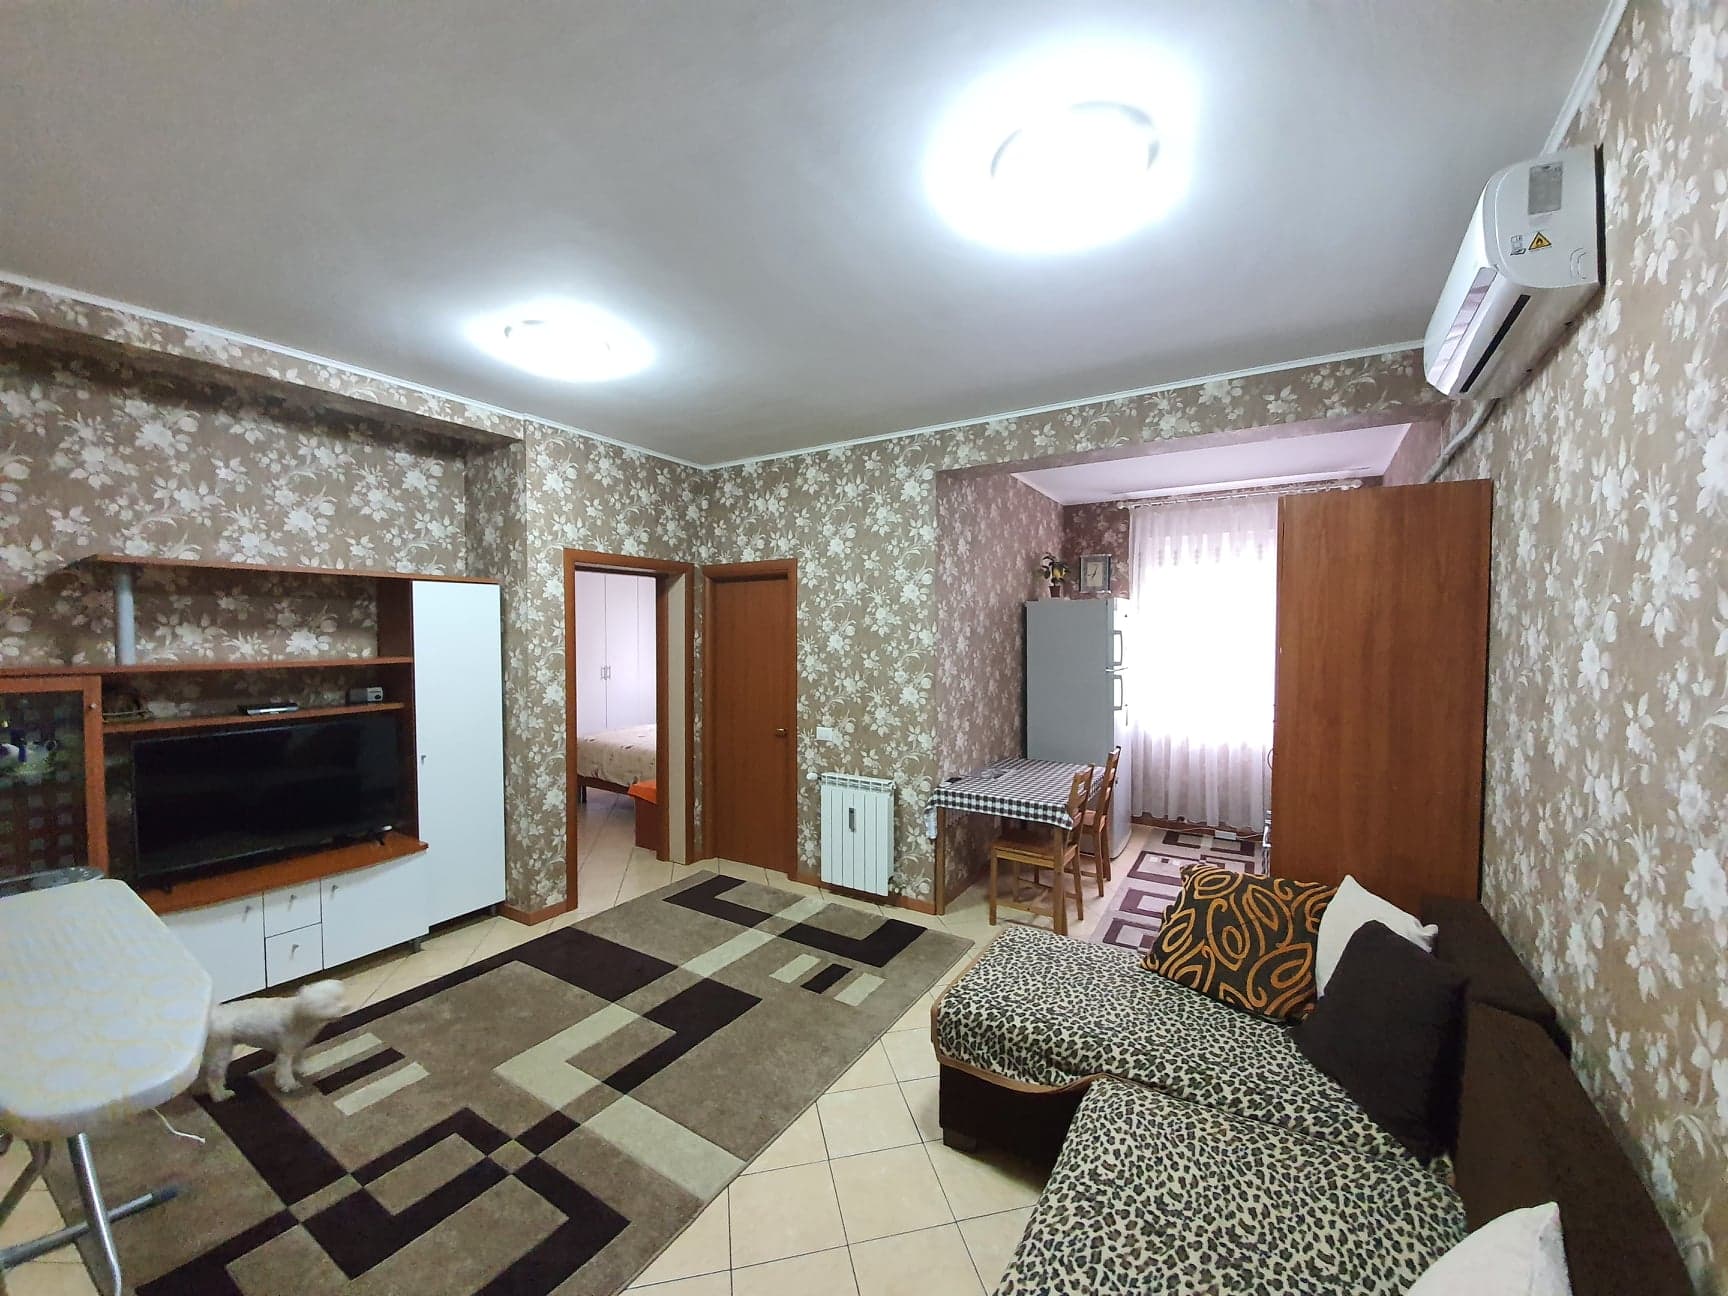 Apartament 2 camere de vanzare, str. Traian Lalescu, Oradea – AP0977